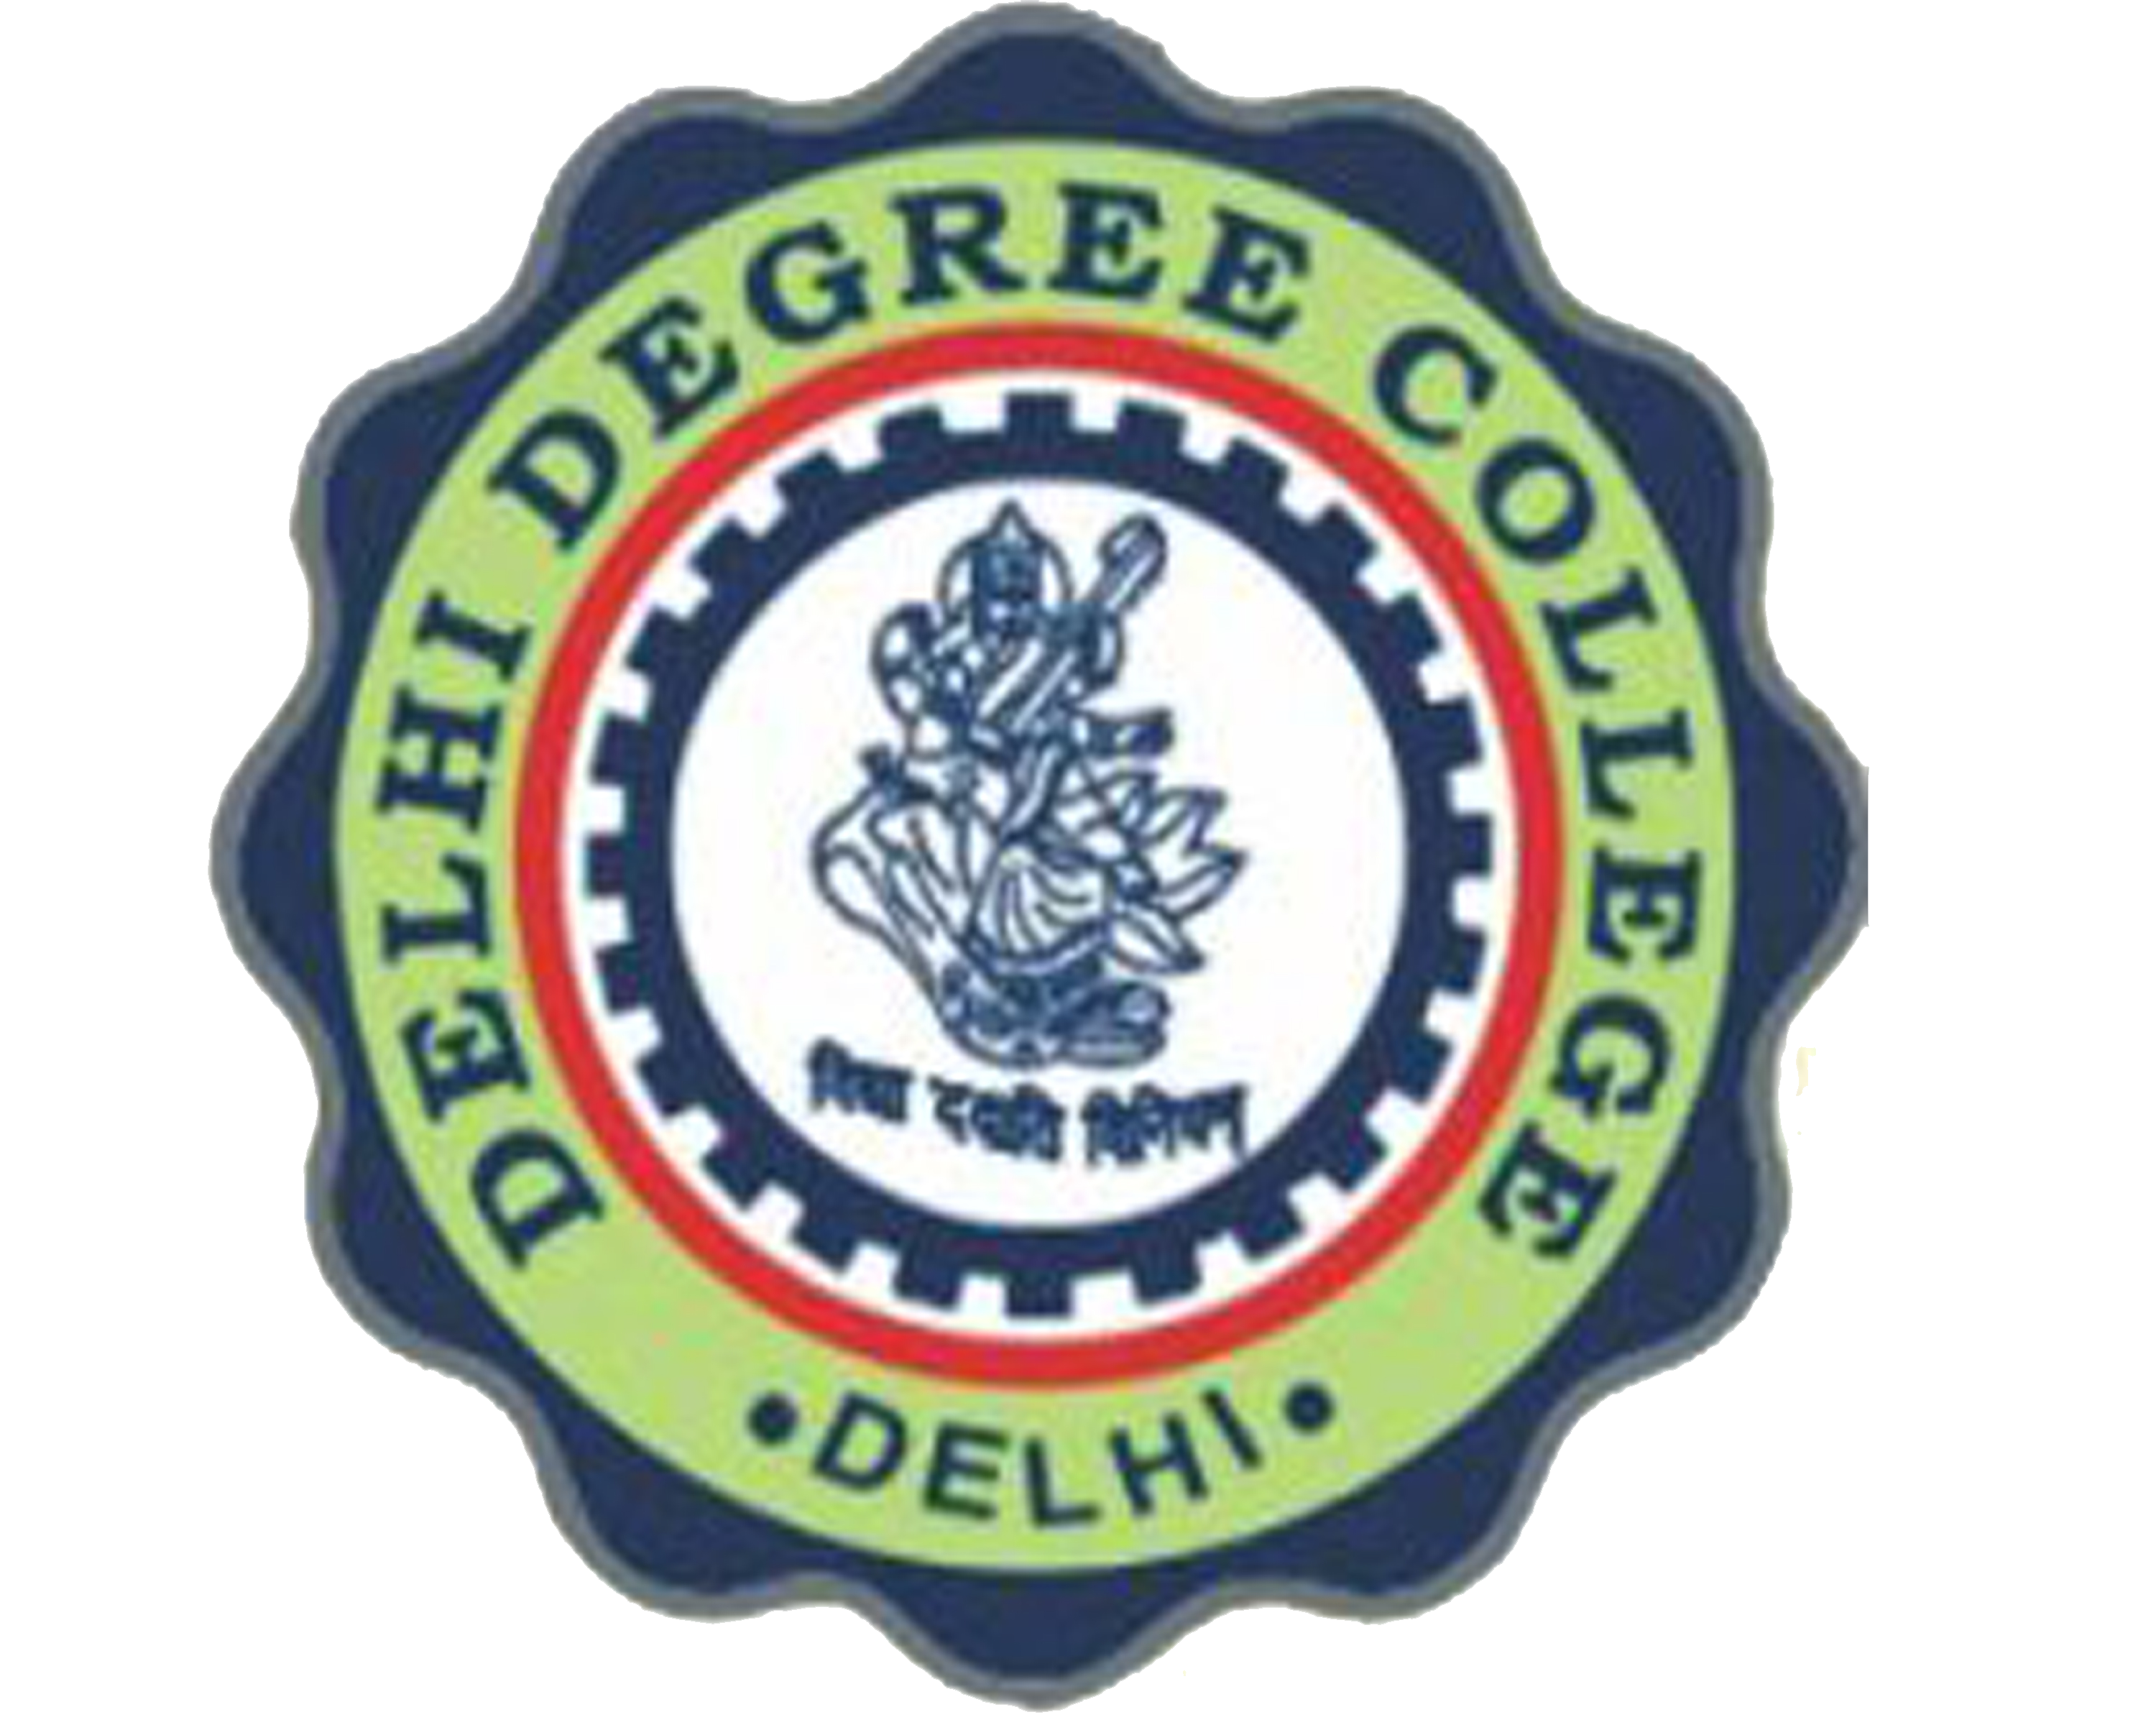 Delhi Degree College, New Delhi